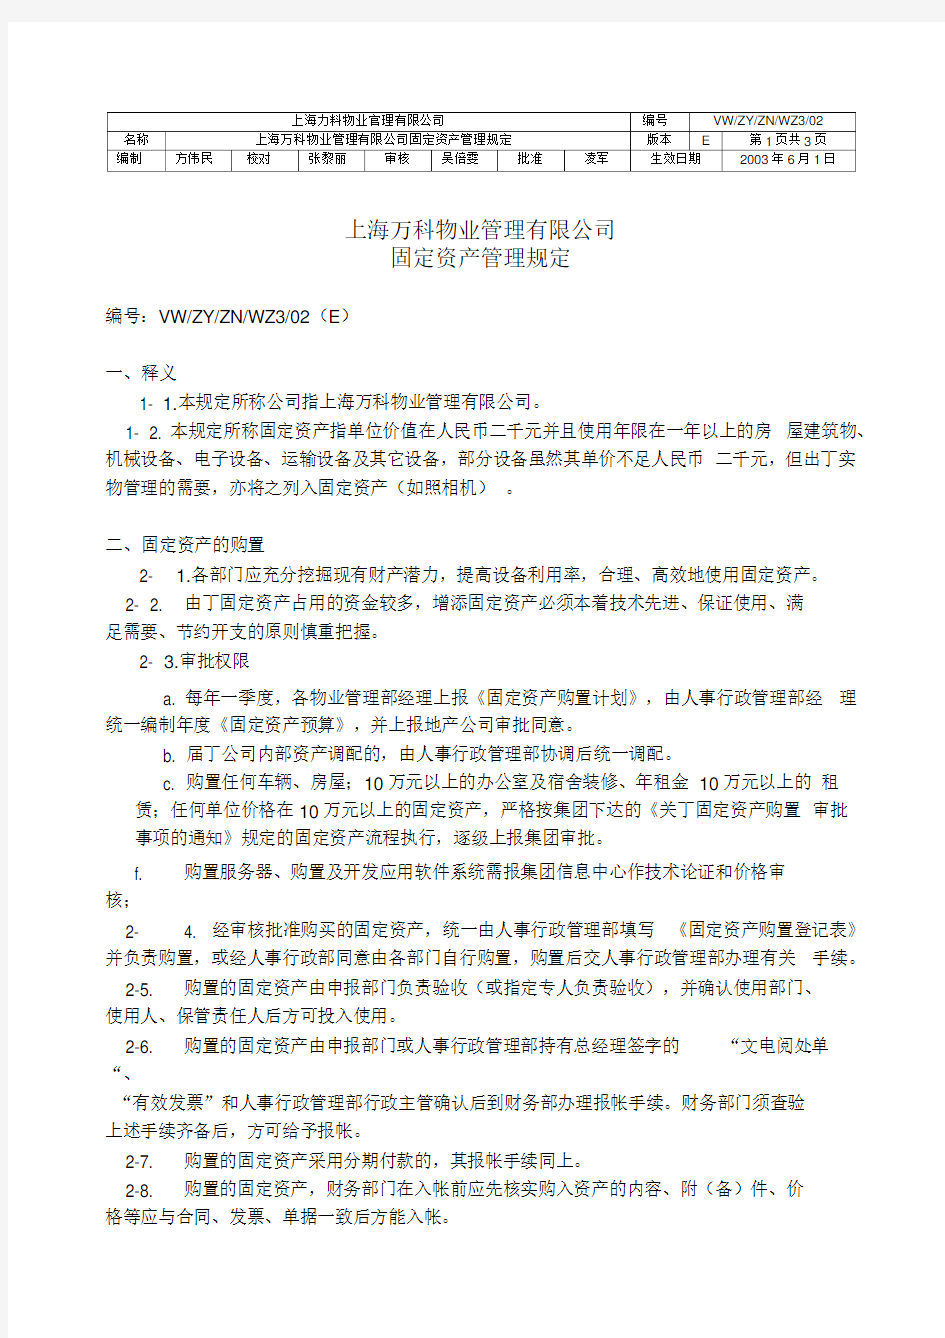 上海万科物业管理有限公司固定资产管理规定